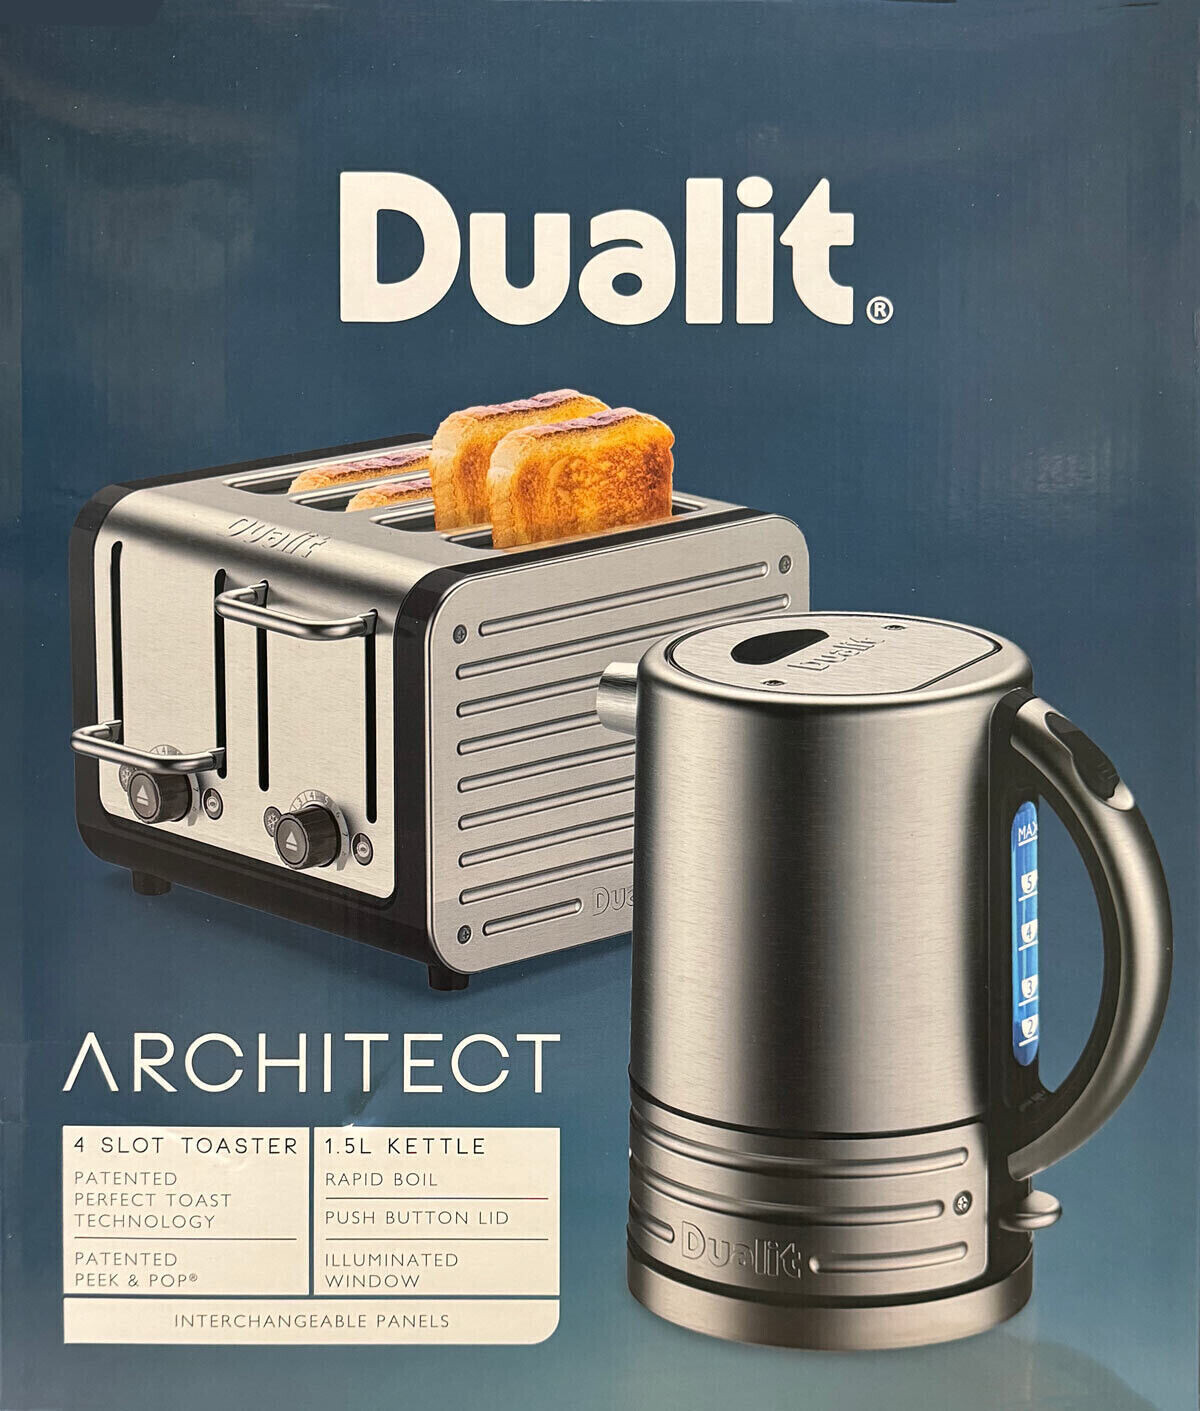 Dualit Architect 4 Slice Slot Toaster and Kettle Set Midnight Brushed Grey CJK1/2300W